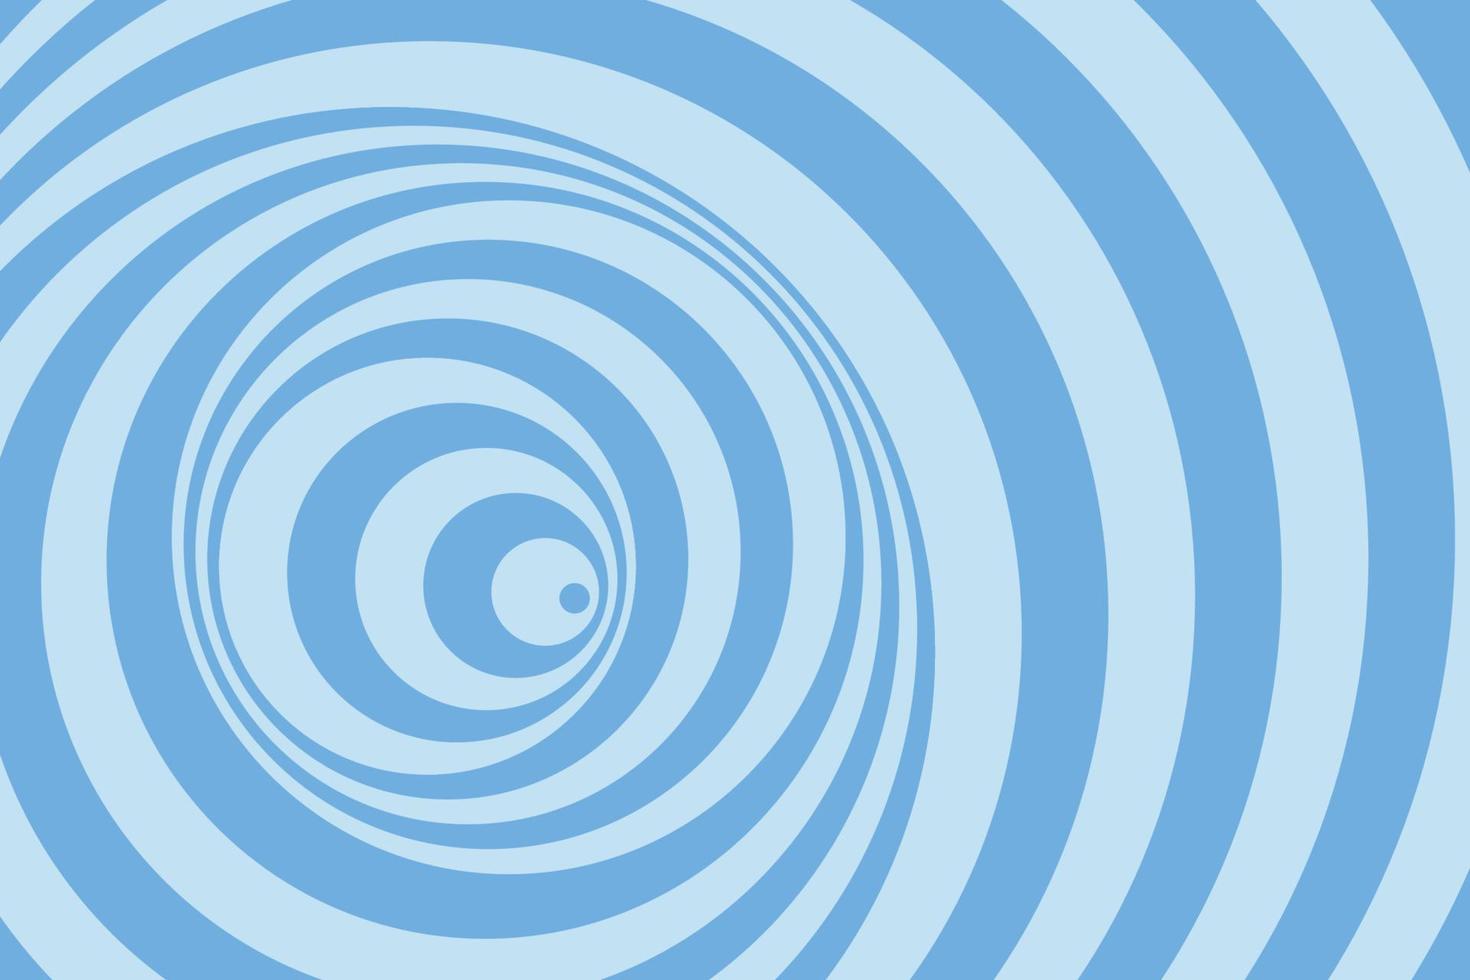 fond de spirale psychédélique hypnotique. illustration de rayures bleu marine dans le style rétro vecteur